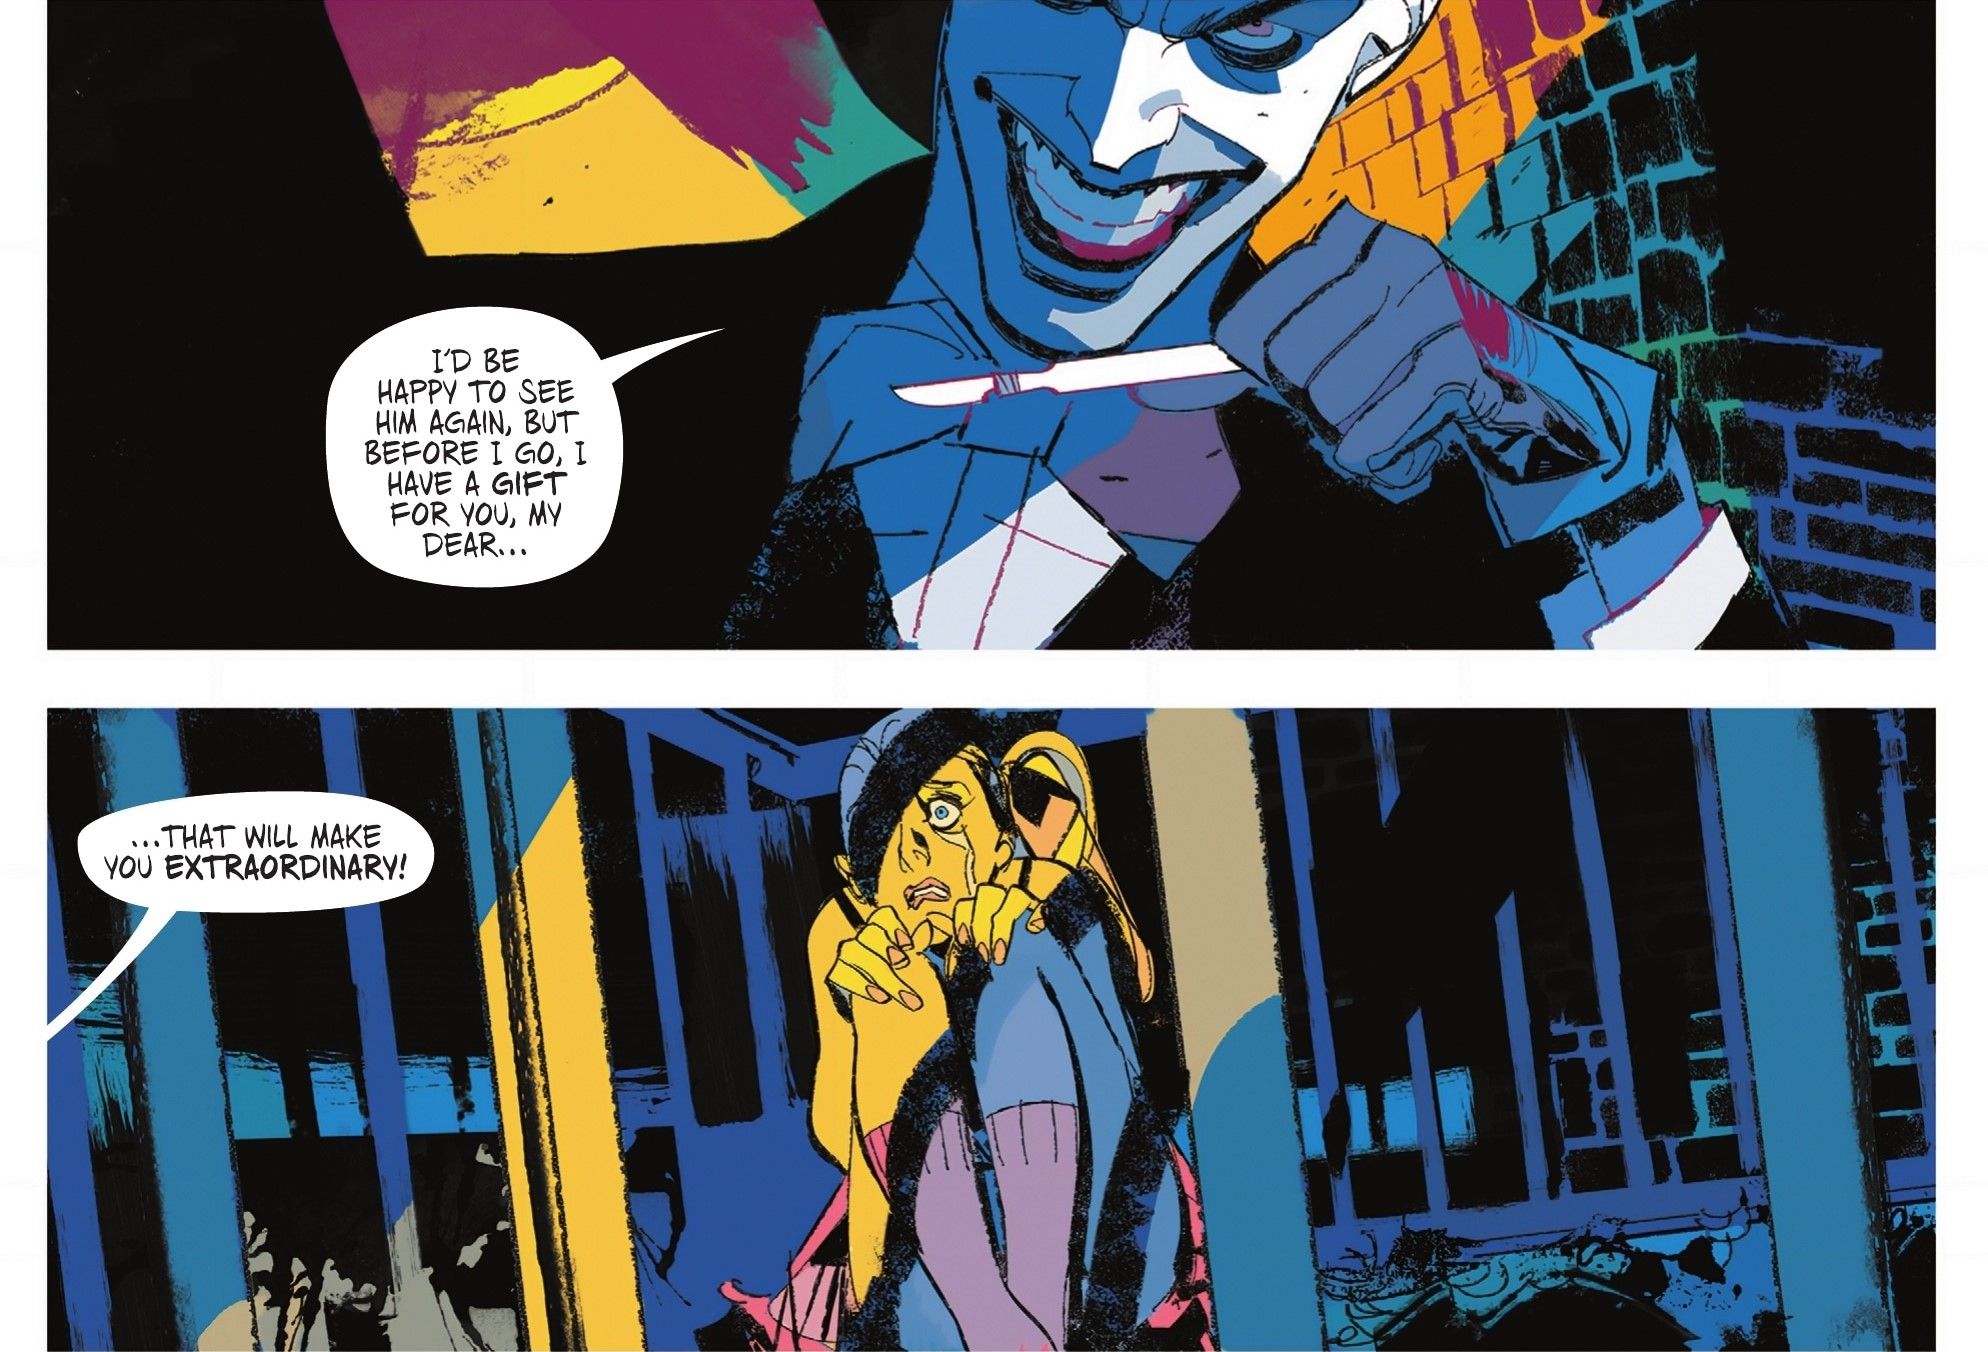 Batman Dylan Dog #1 featuring Joker and Girl